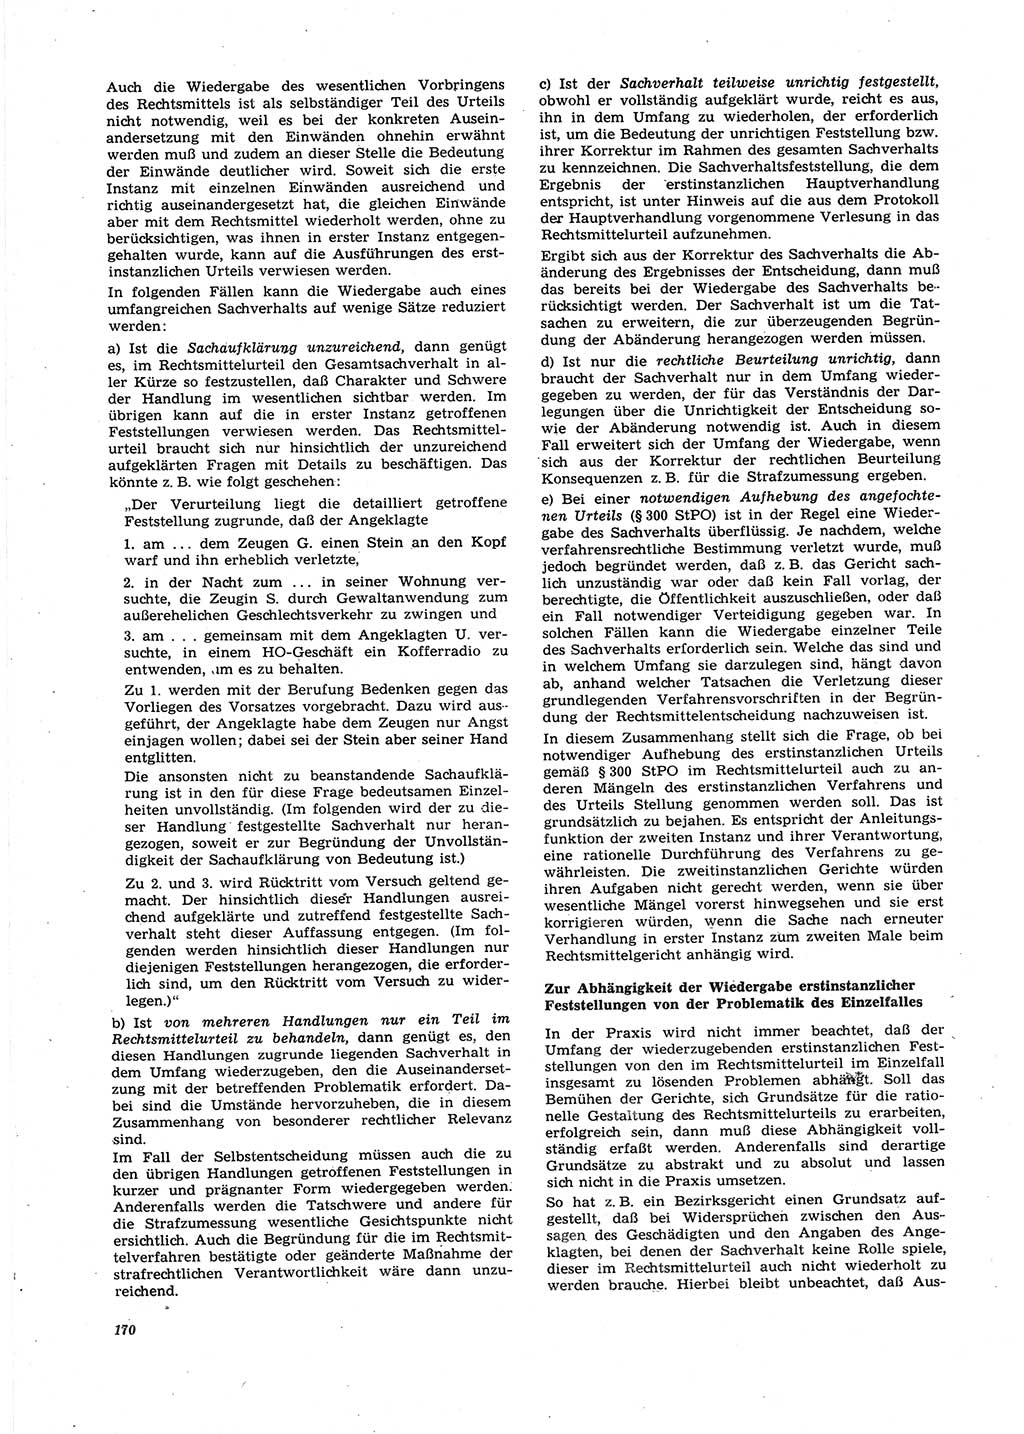 Neue Justiz (NJ), Zeitschrift für Recht und Rechtswissenschaft [Deutsche Demokratische Republik (DDR)], 27. Jahrgang 1973, Seite 170 (NJ DDR 1973, S. 170)